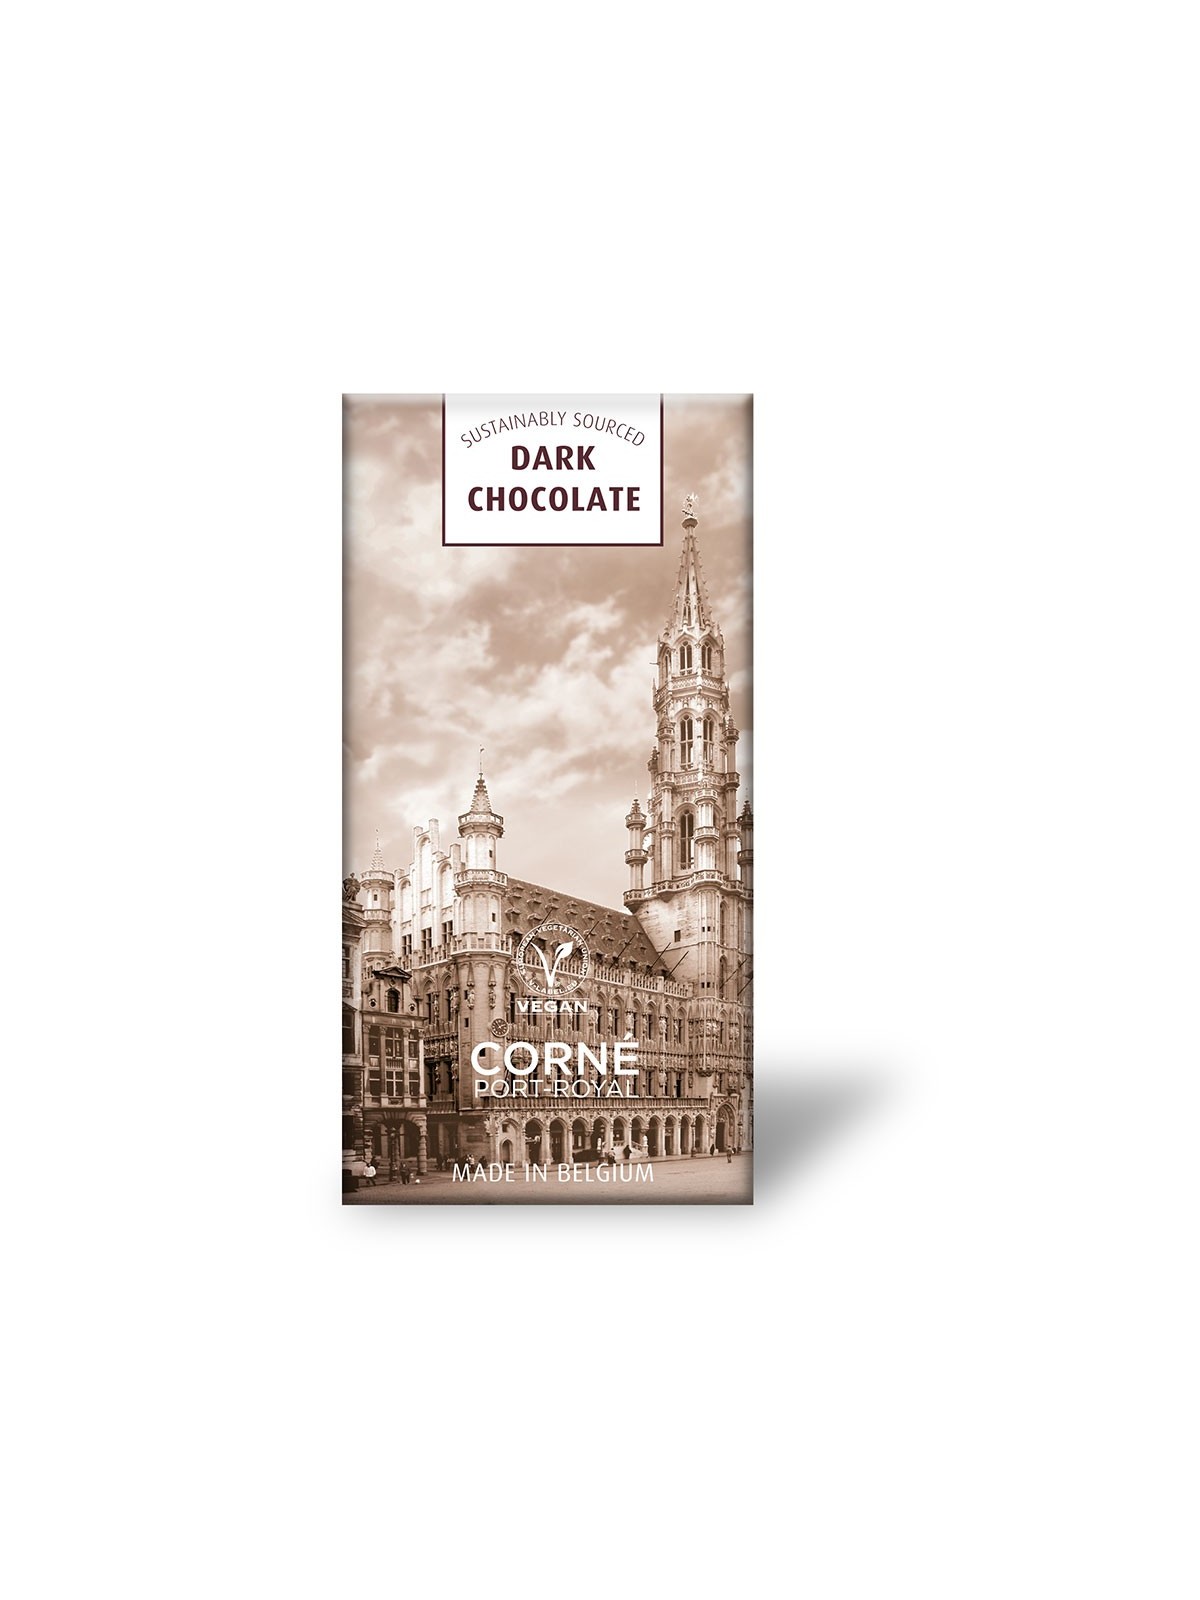 64-021 Assortiment chocolats personnalisé